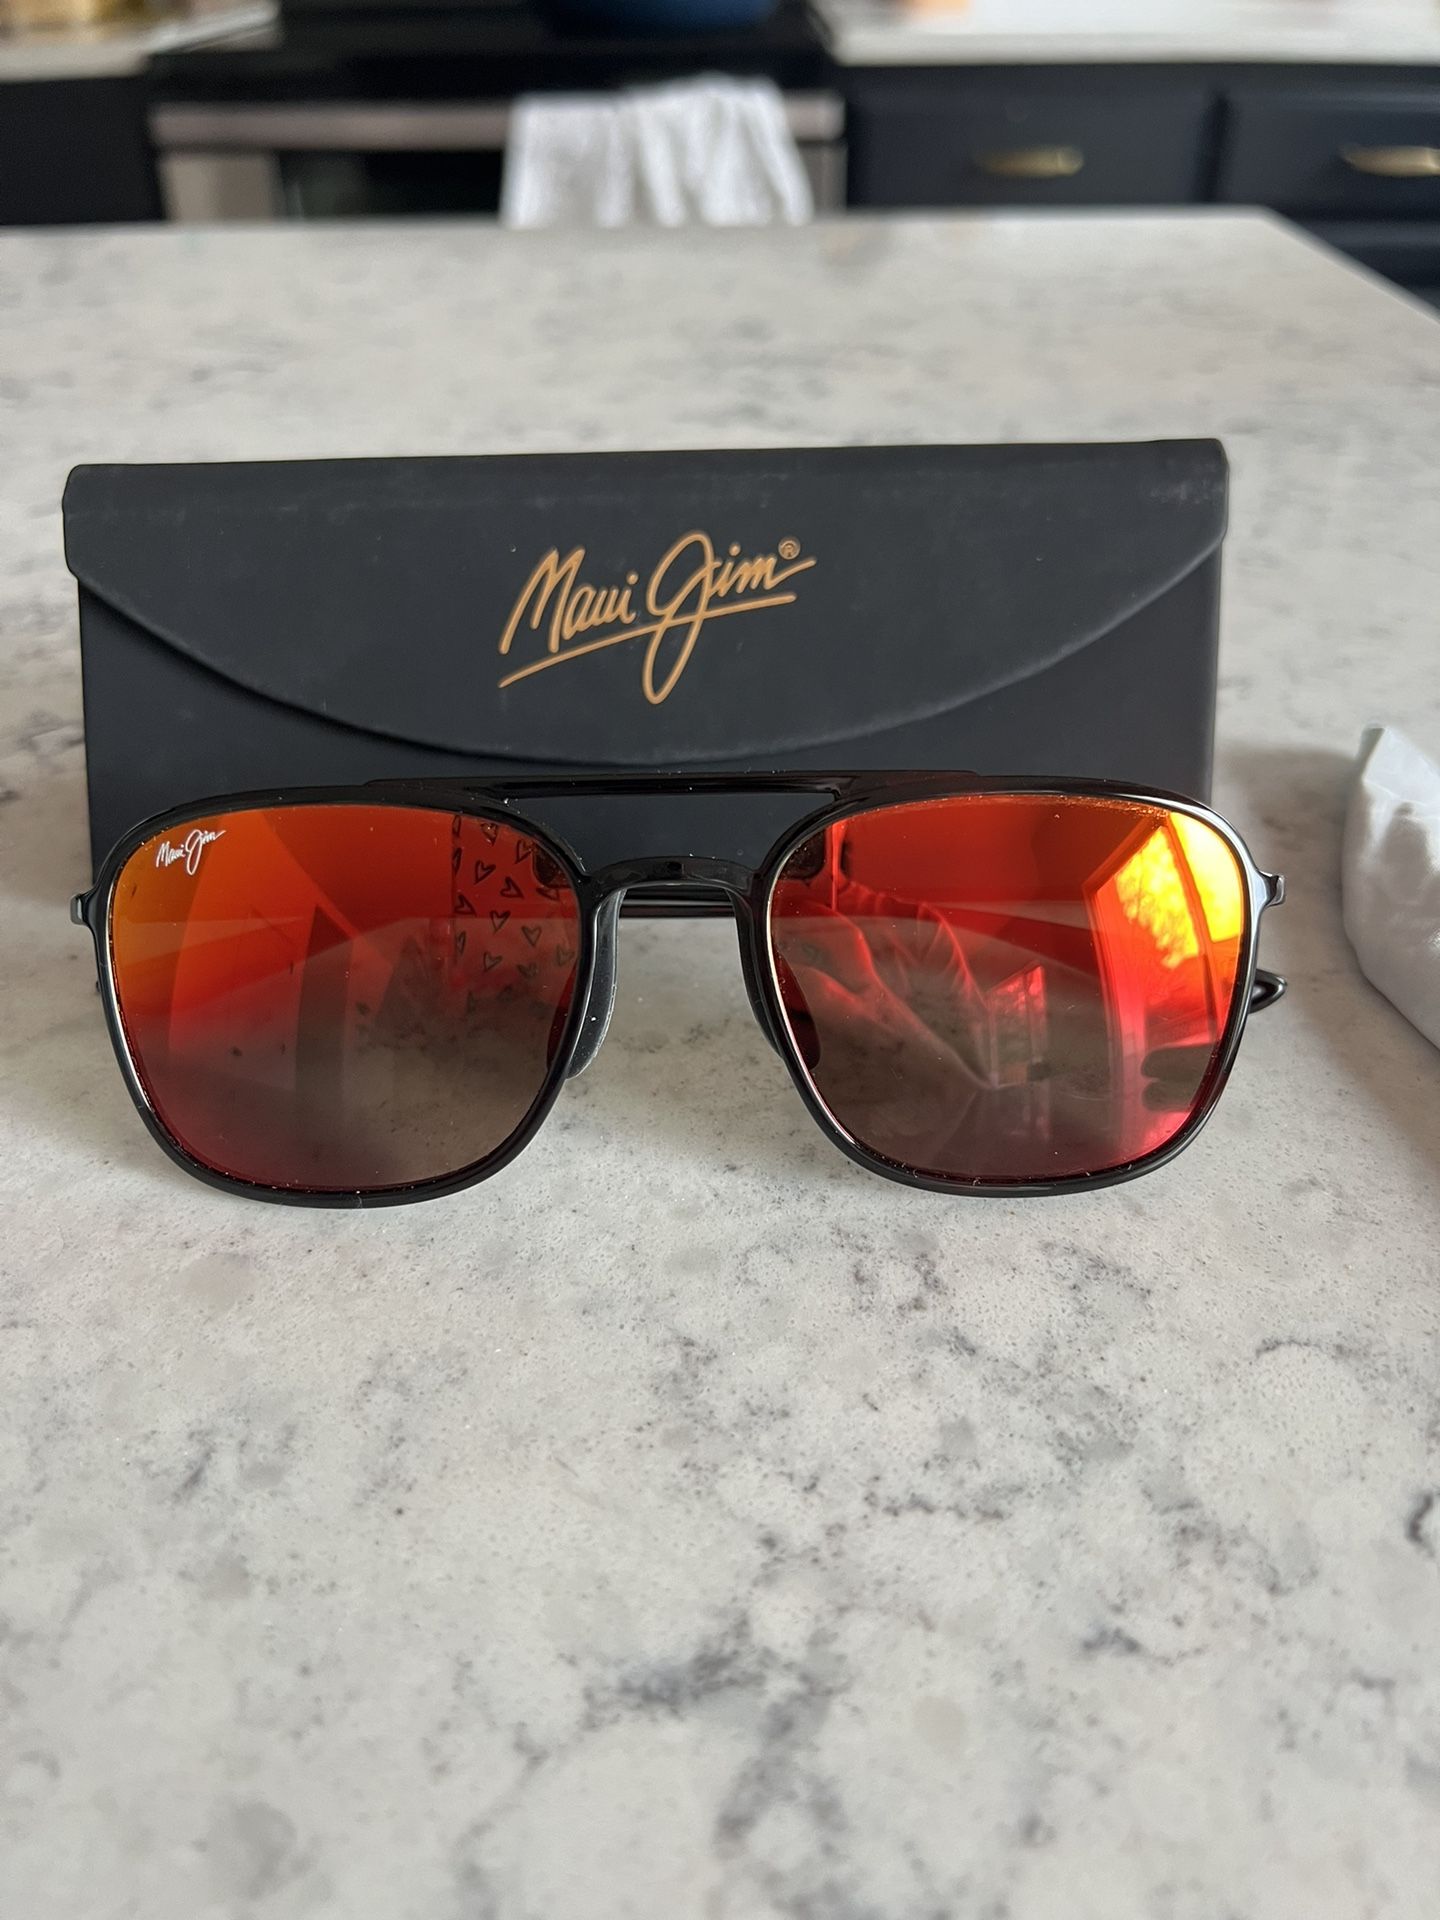 Maui Jim (Polarized) Sunglasses ($100)